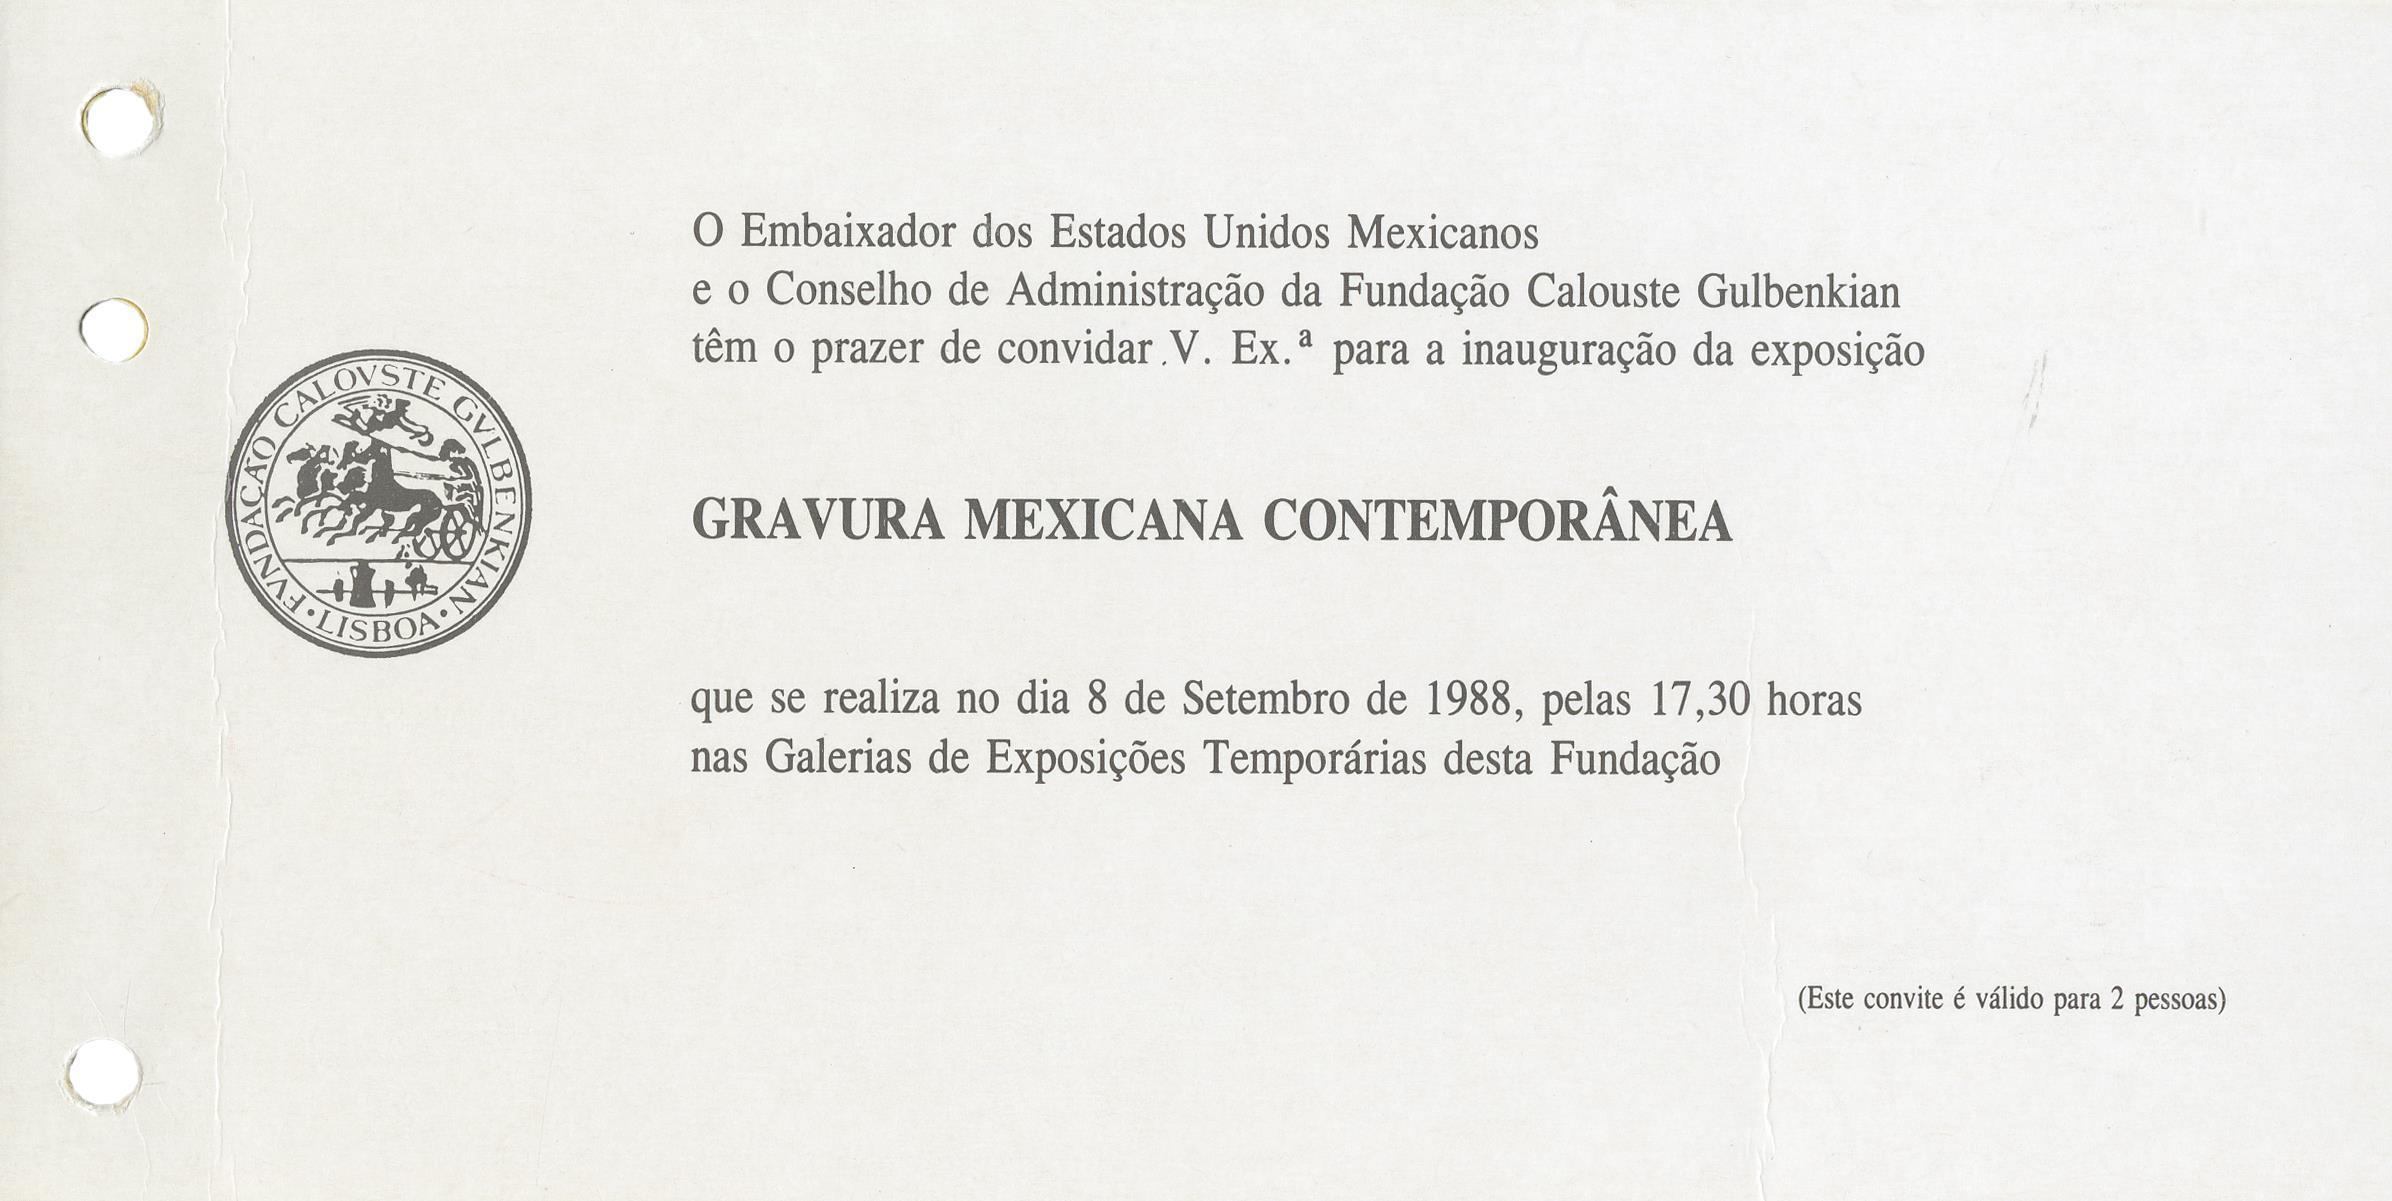 Gravura Mexicana Contemporânea